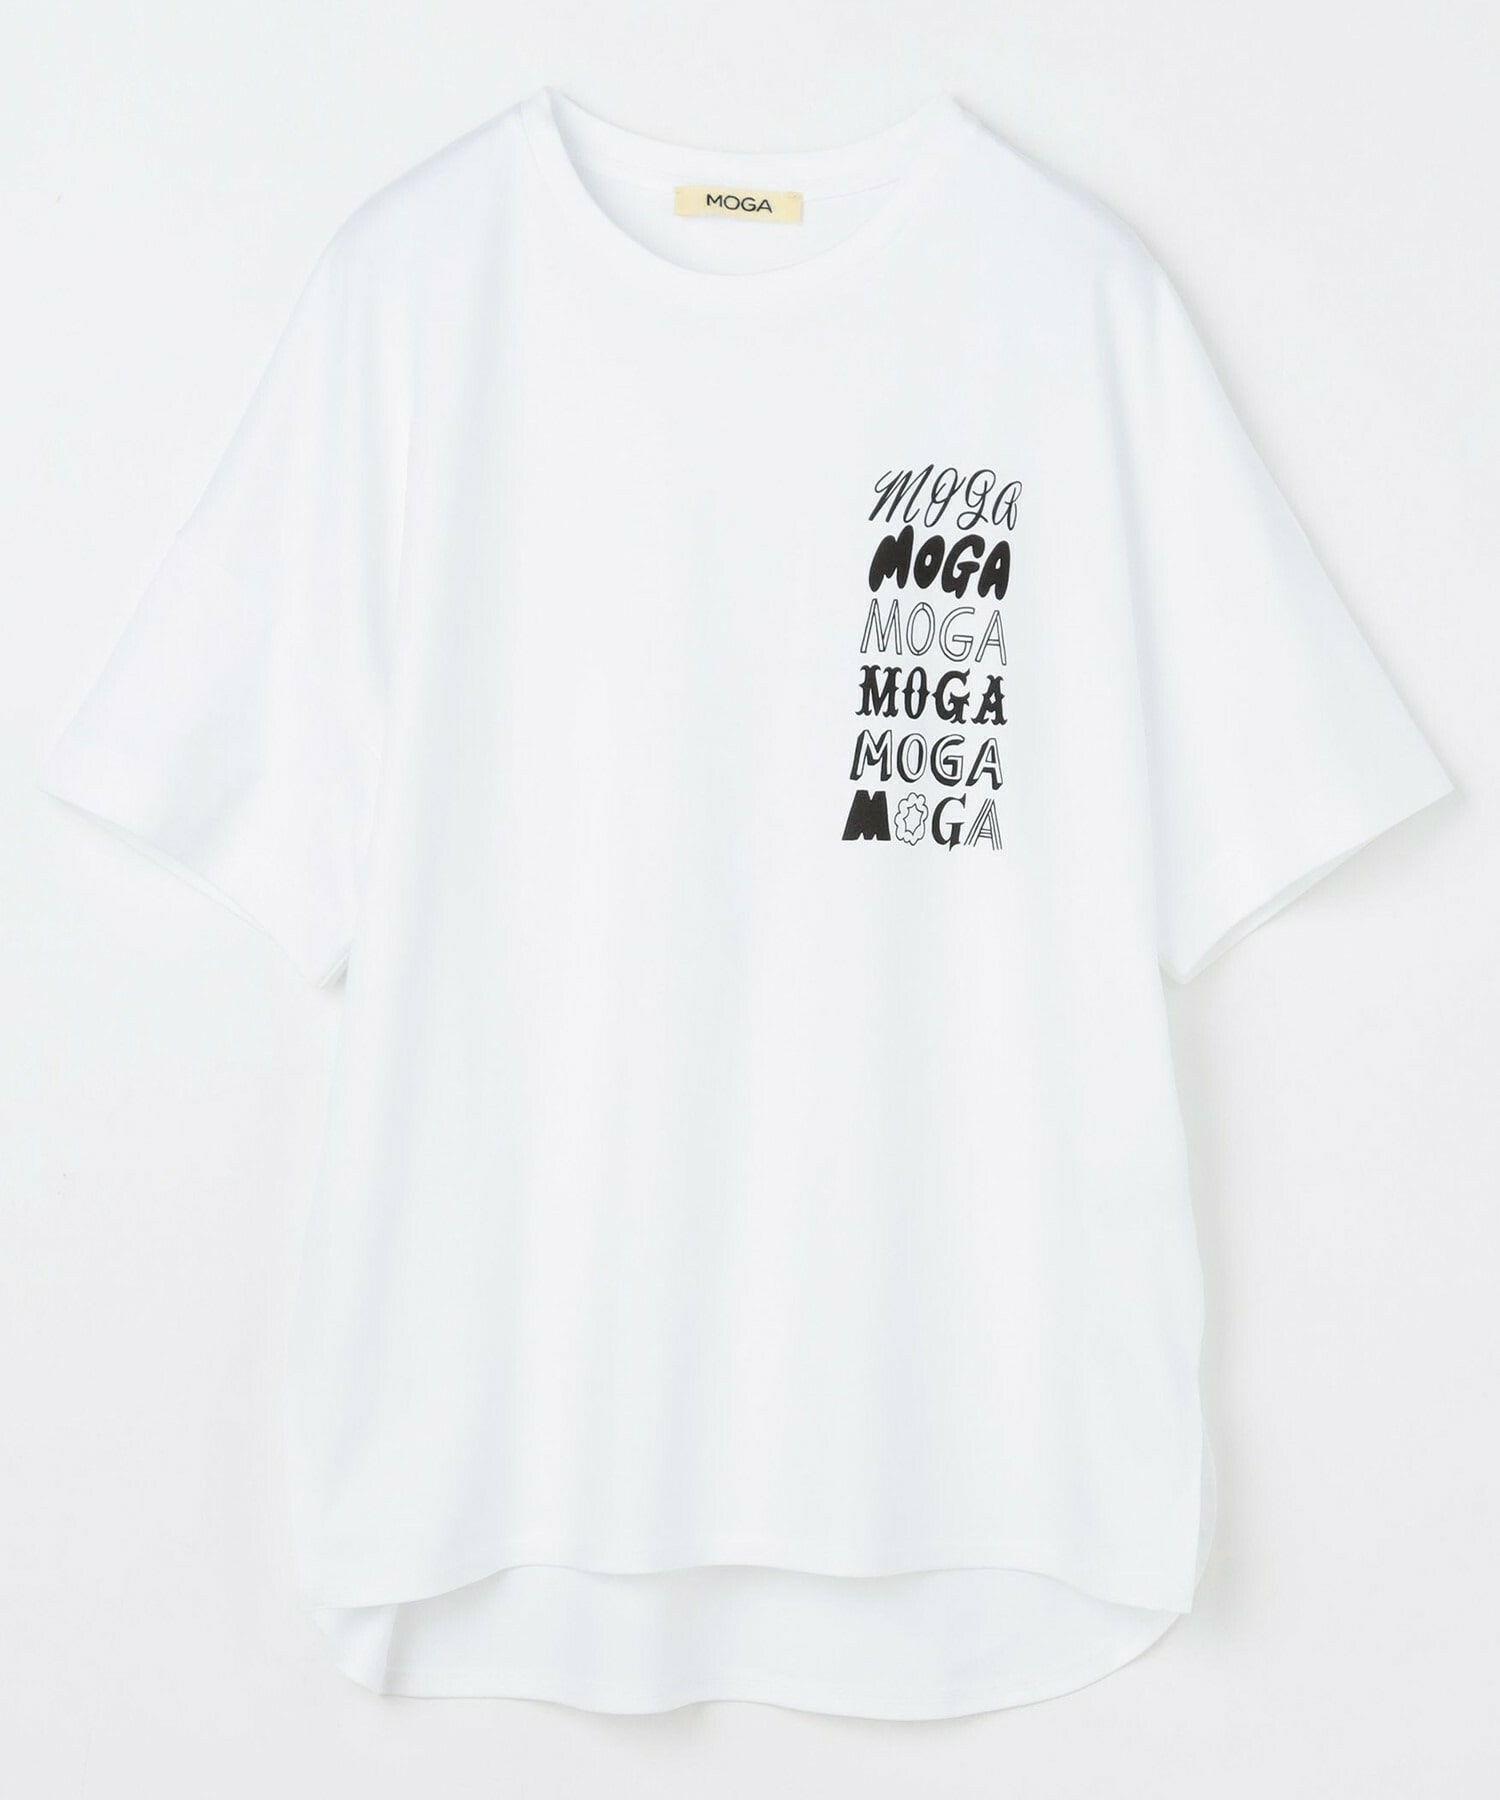 【MOGA】SHOGO SEKINE×MOGA コラボプリントT [Various MOGA print1] 詳細画像 オフホワイト 2